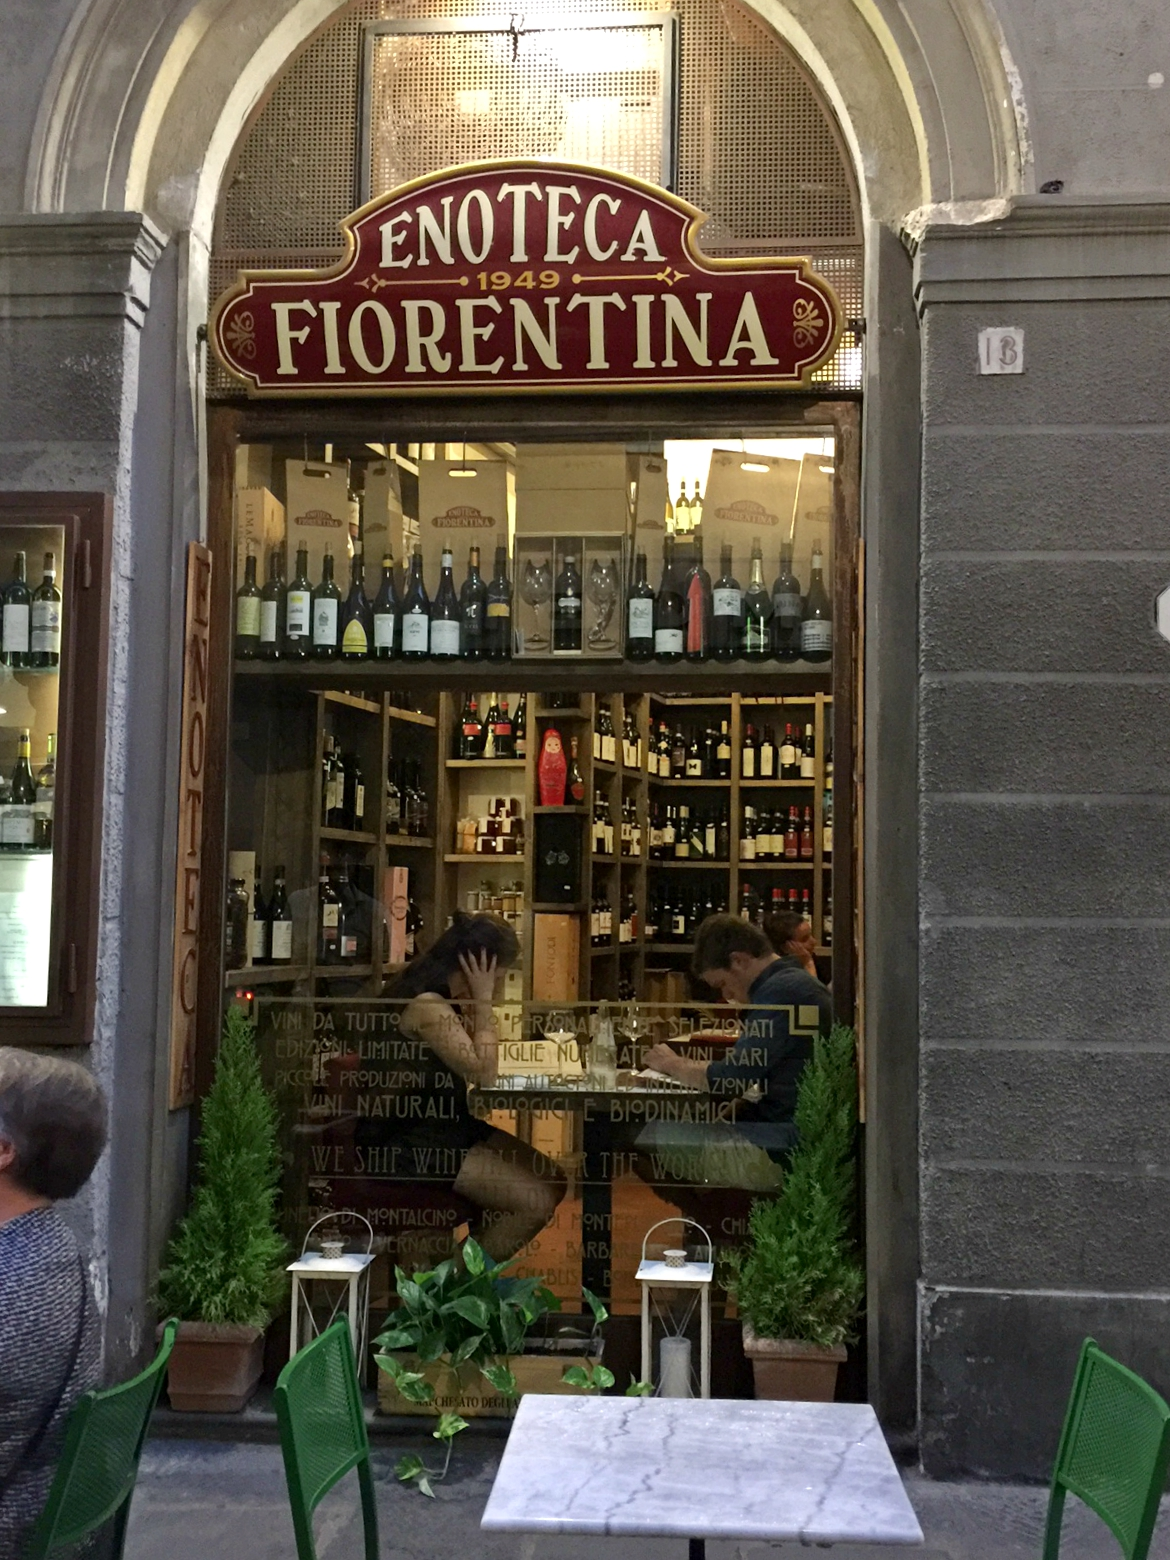 Enoteca Fiorentina, Florence